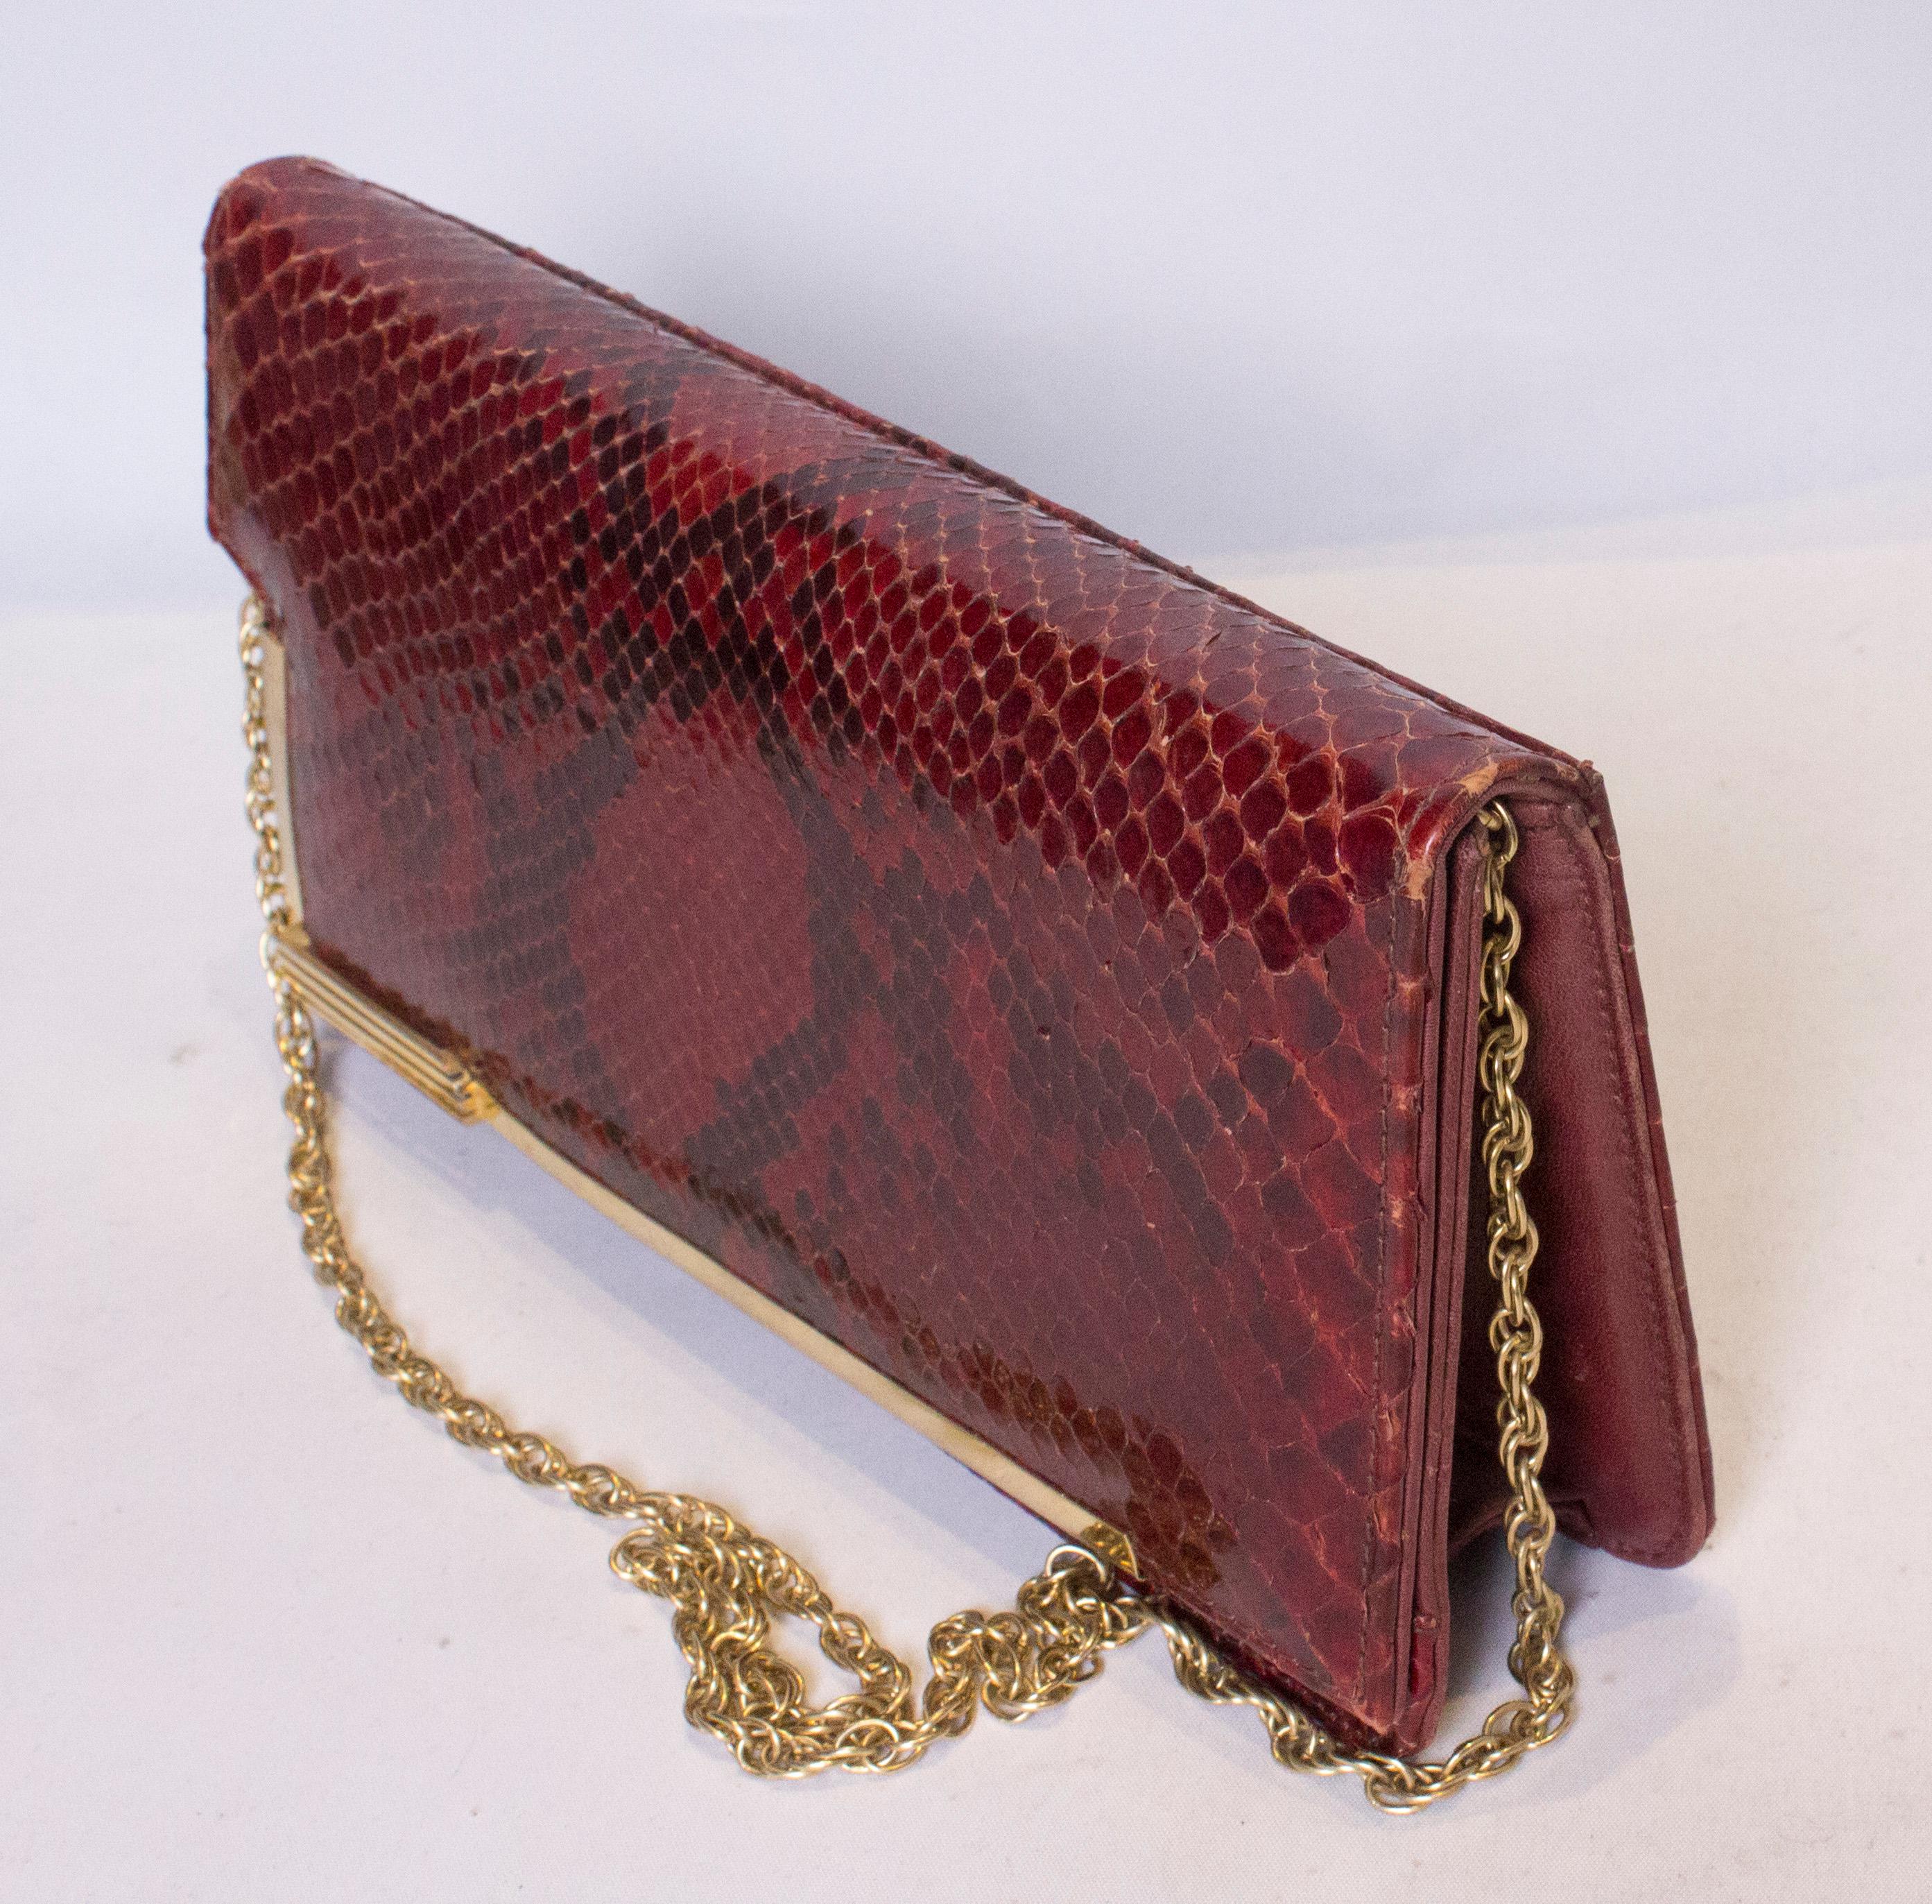 Eine schicke Vintage-Handtasche aus Schlangenleder mit vergoldeten Verzierungen und Kettengriff.  Die Tasche hat einen Druckknopfverschluss und innen ein Reißverschlussfach.
Maße: Breite 11'', Höhe 6'', Tiefe 2''